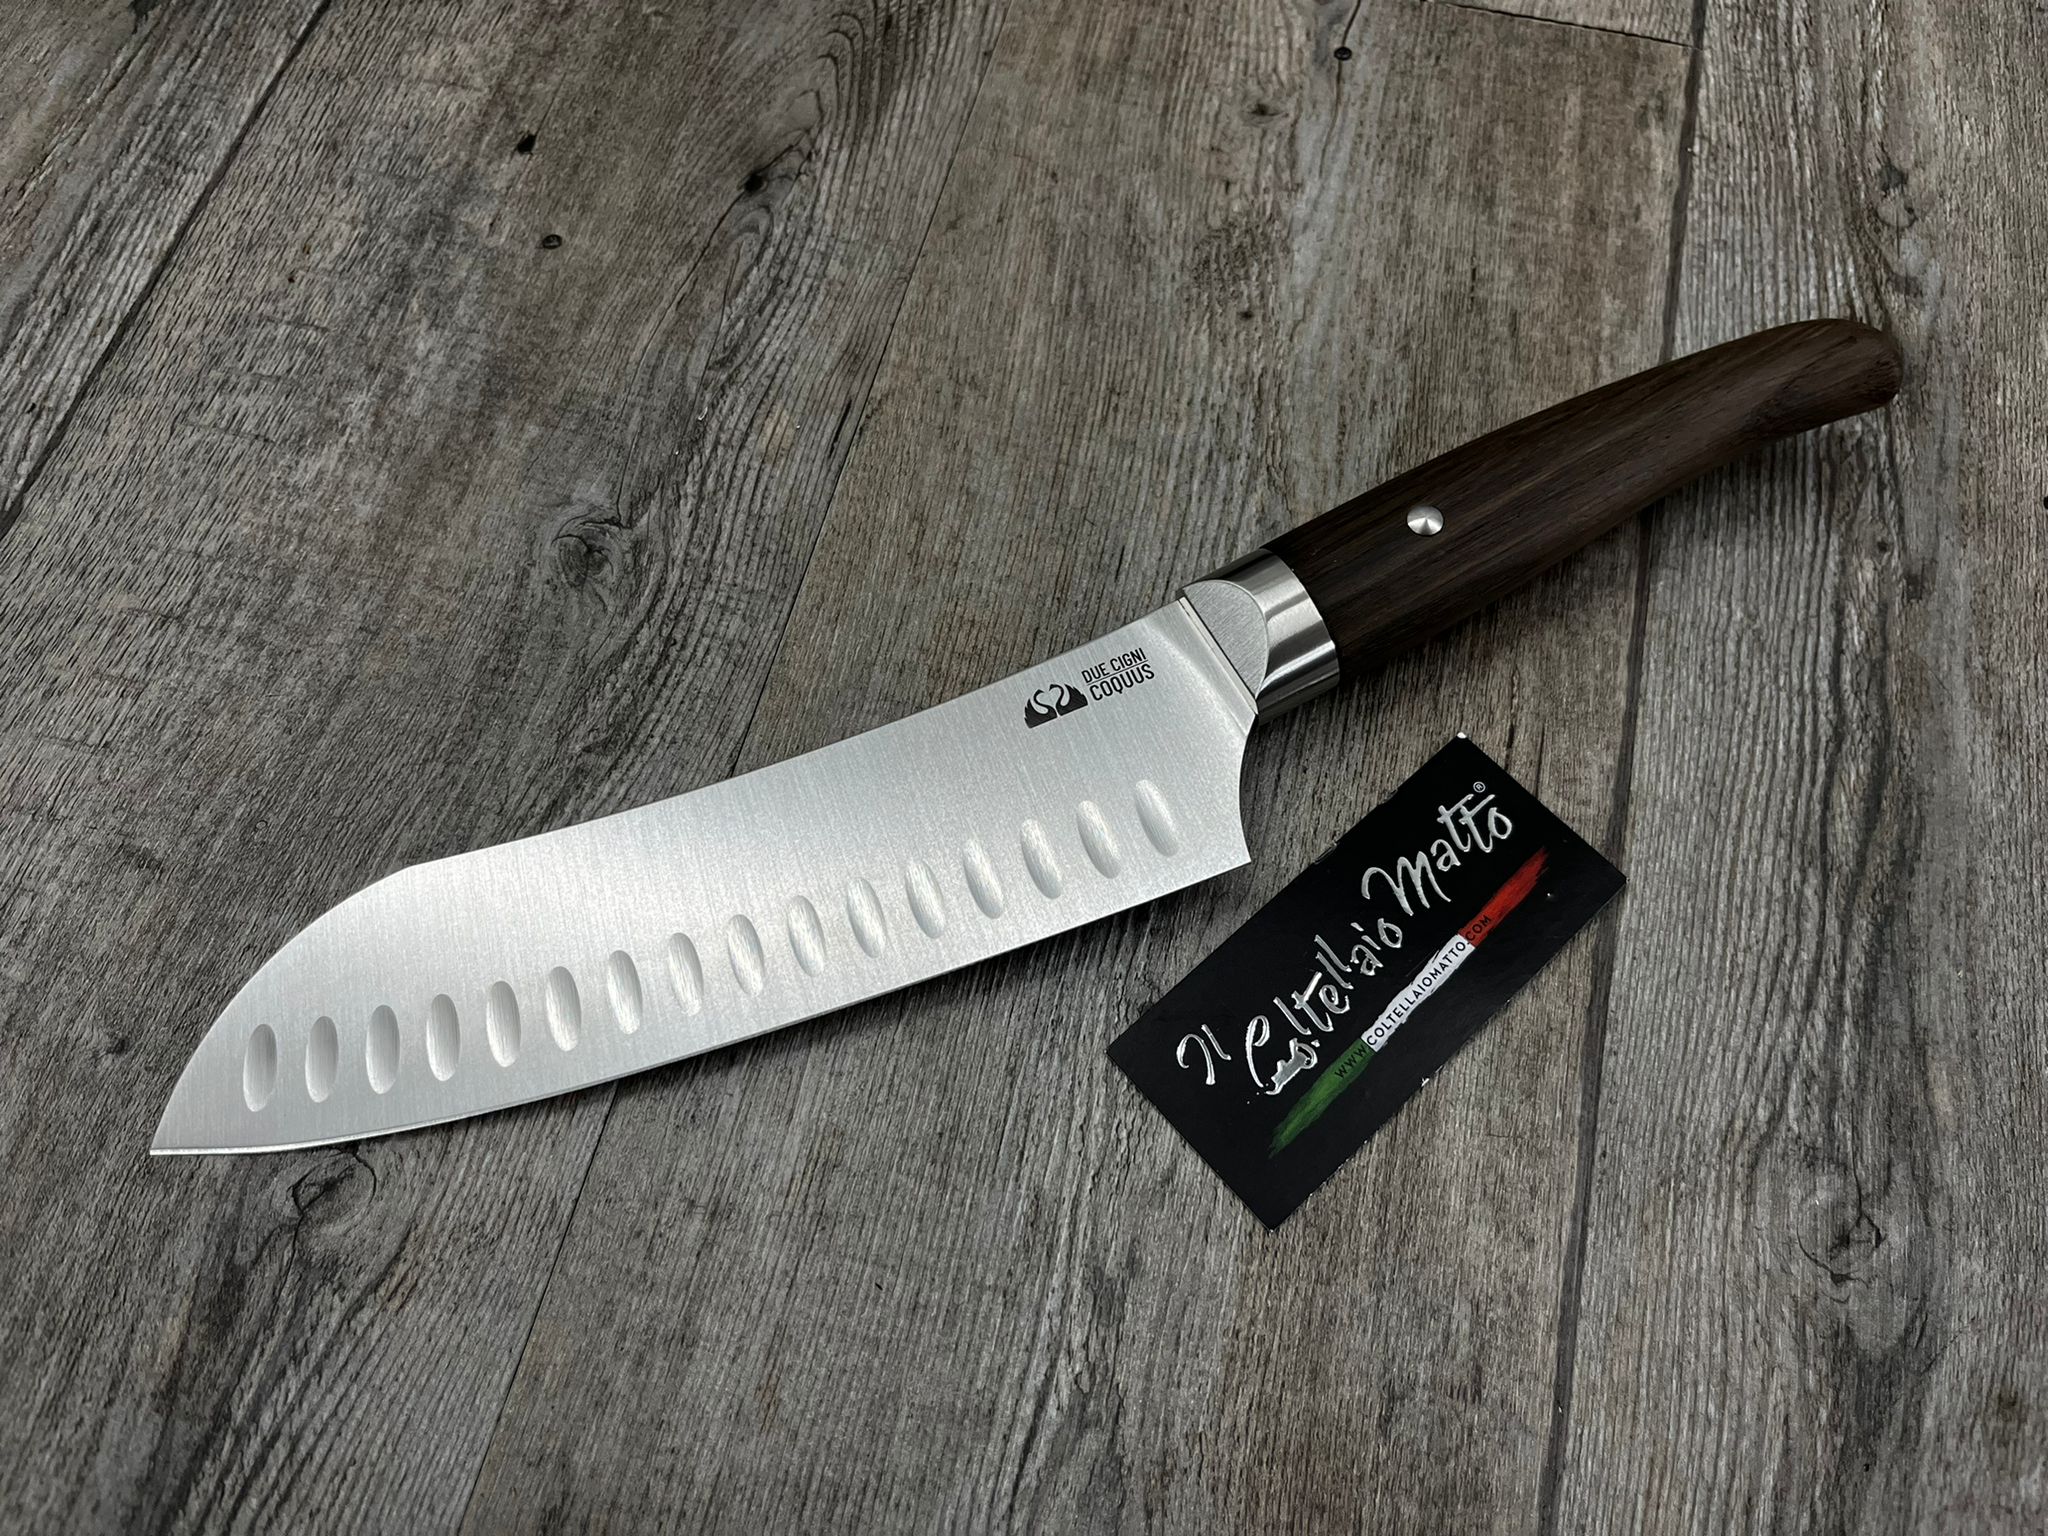 Set di coltelli in acciaio INOX – Kitsune Knives